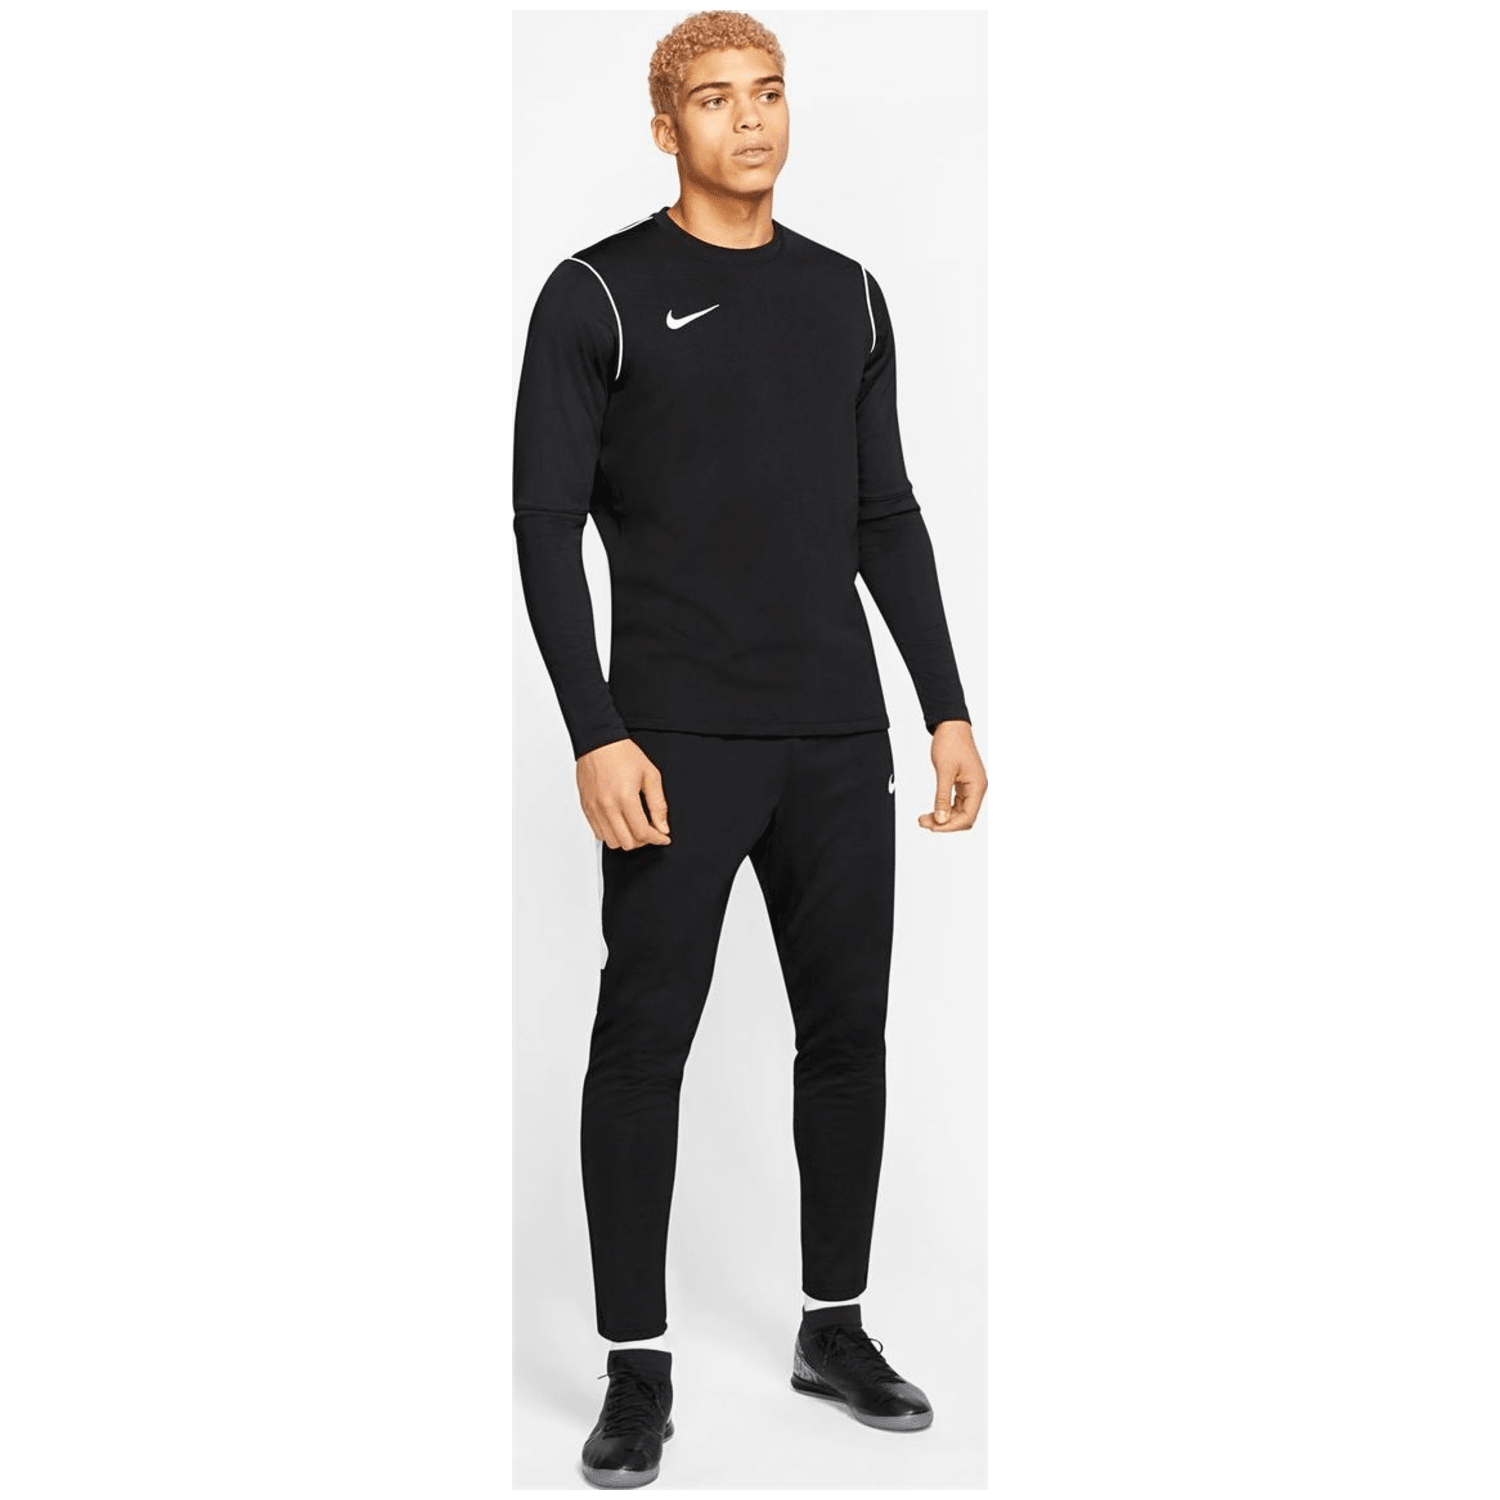 Nike Dri-FIT Top Herren Trikot